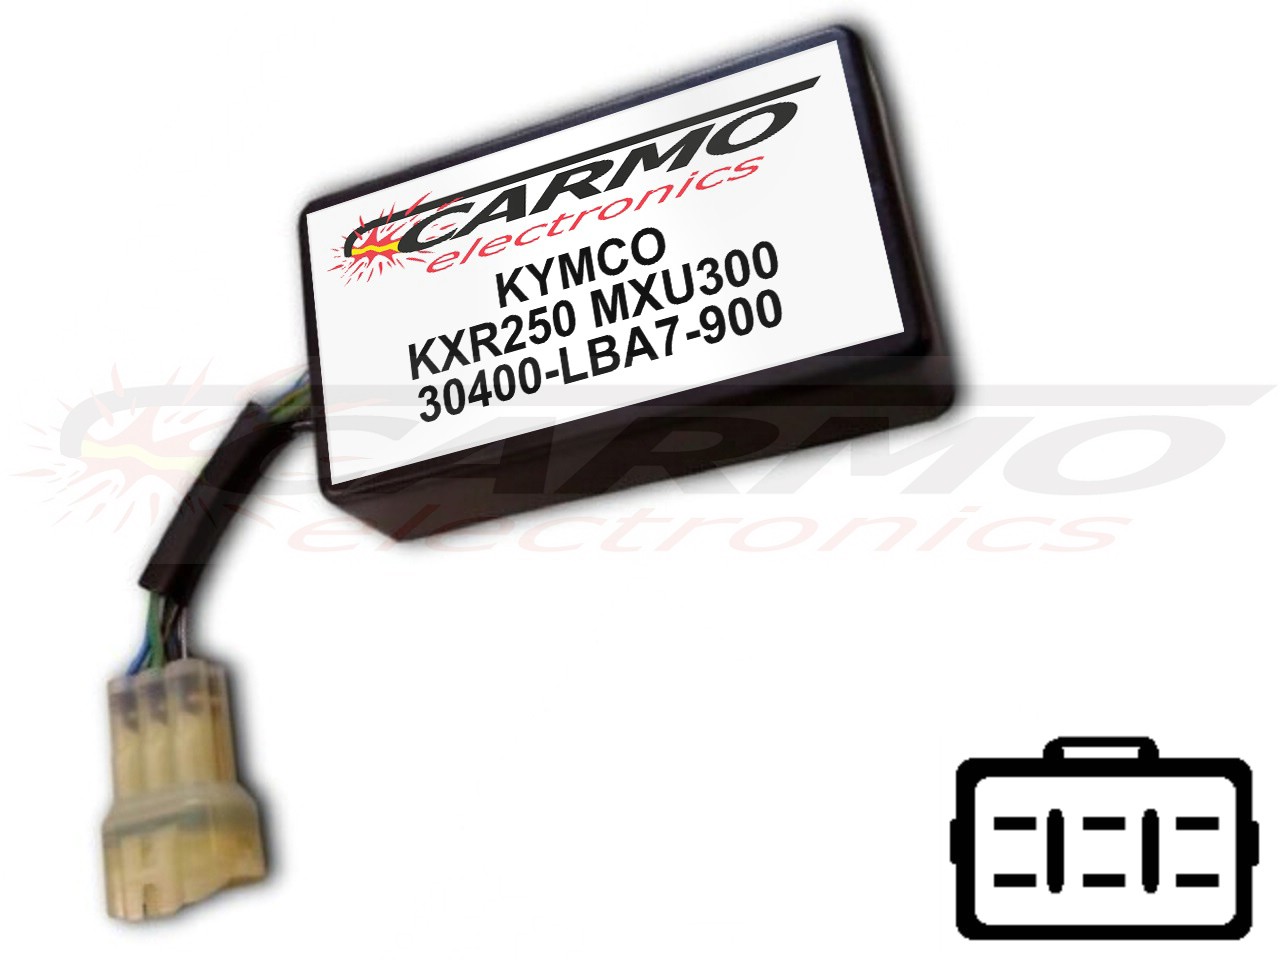 Kymco KXR250 MXU250 Centralina unità CDI motore TCI (30400-LBA7-900, CT-LBA7-00) - Clicca l'immagine per chiudere